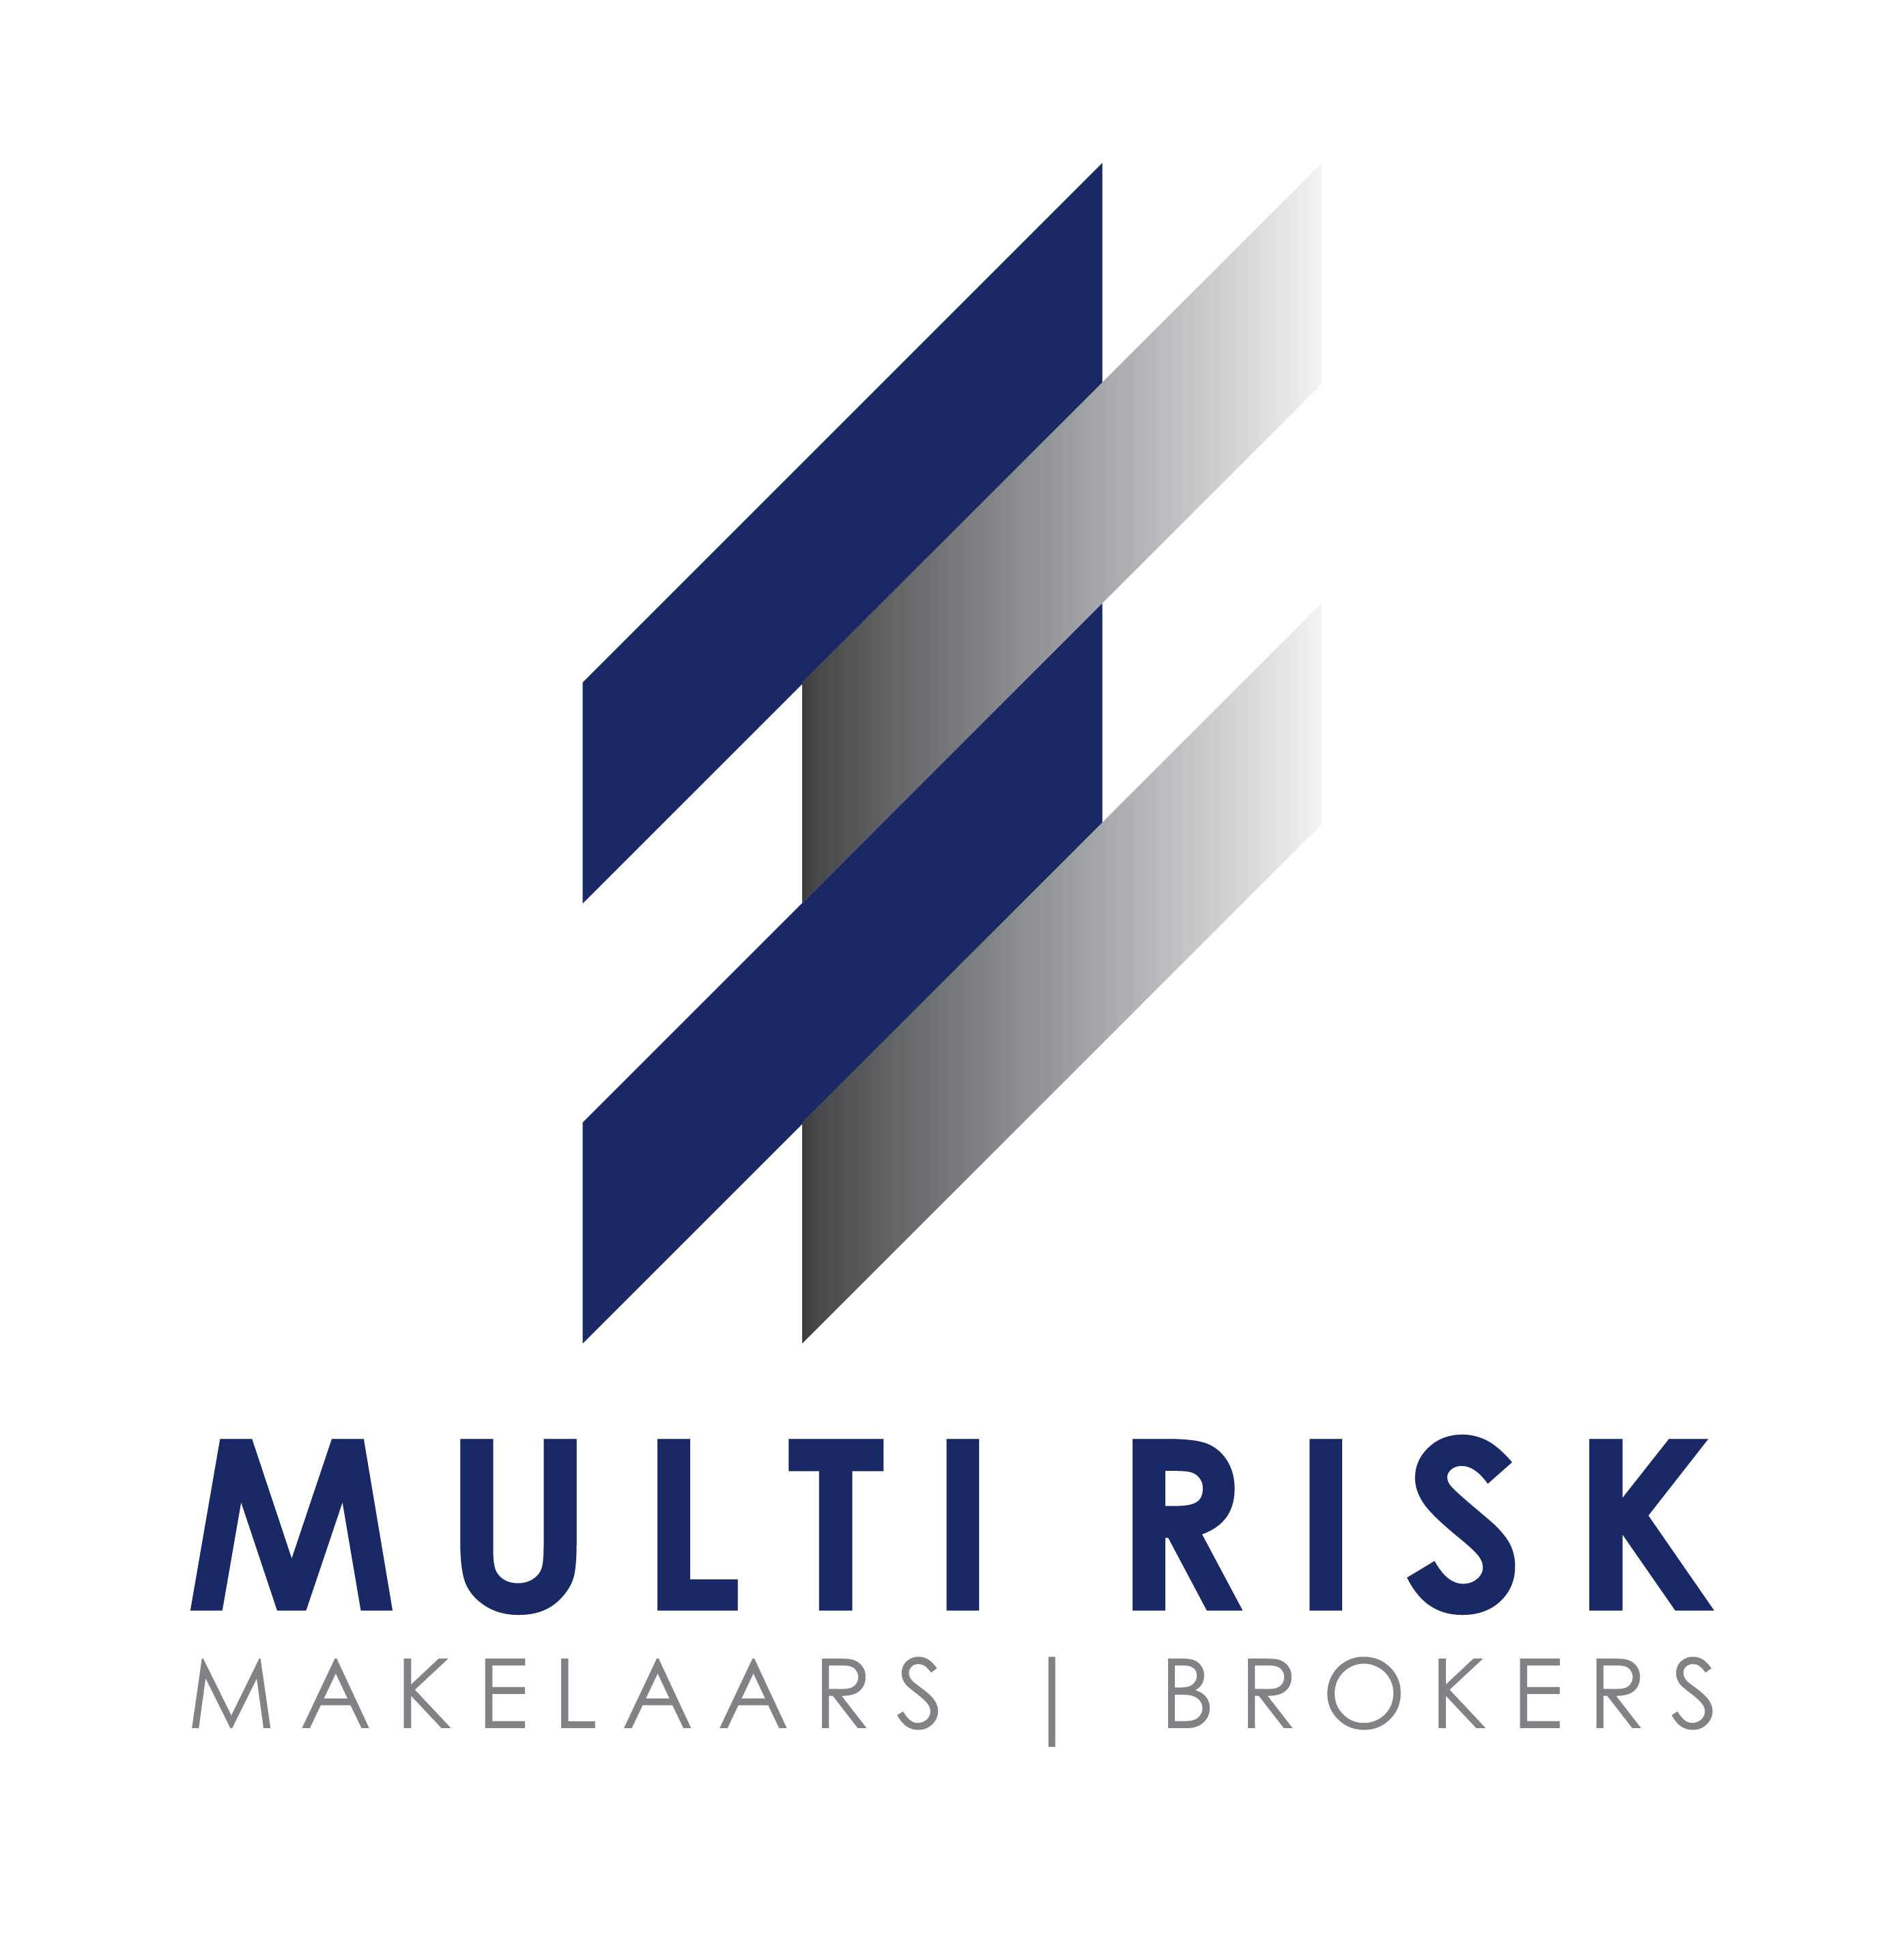 Multi Risk Makelaars | Brokers